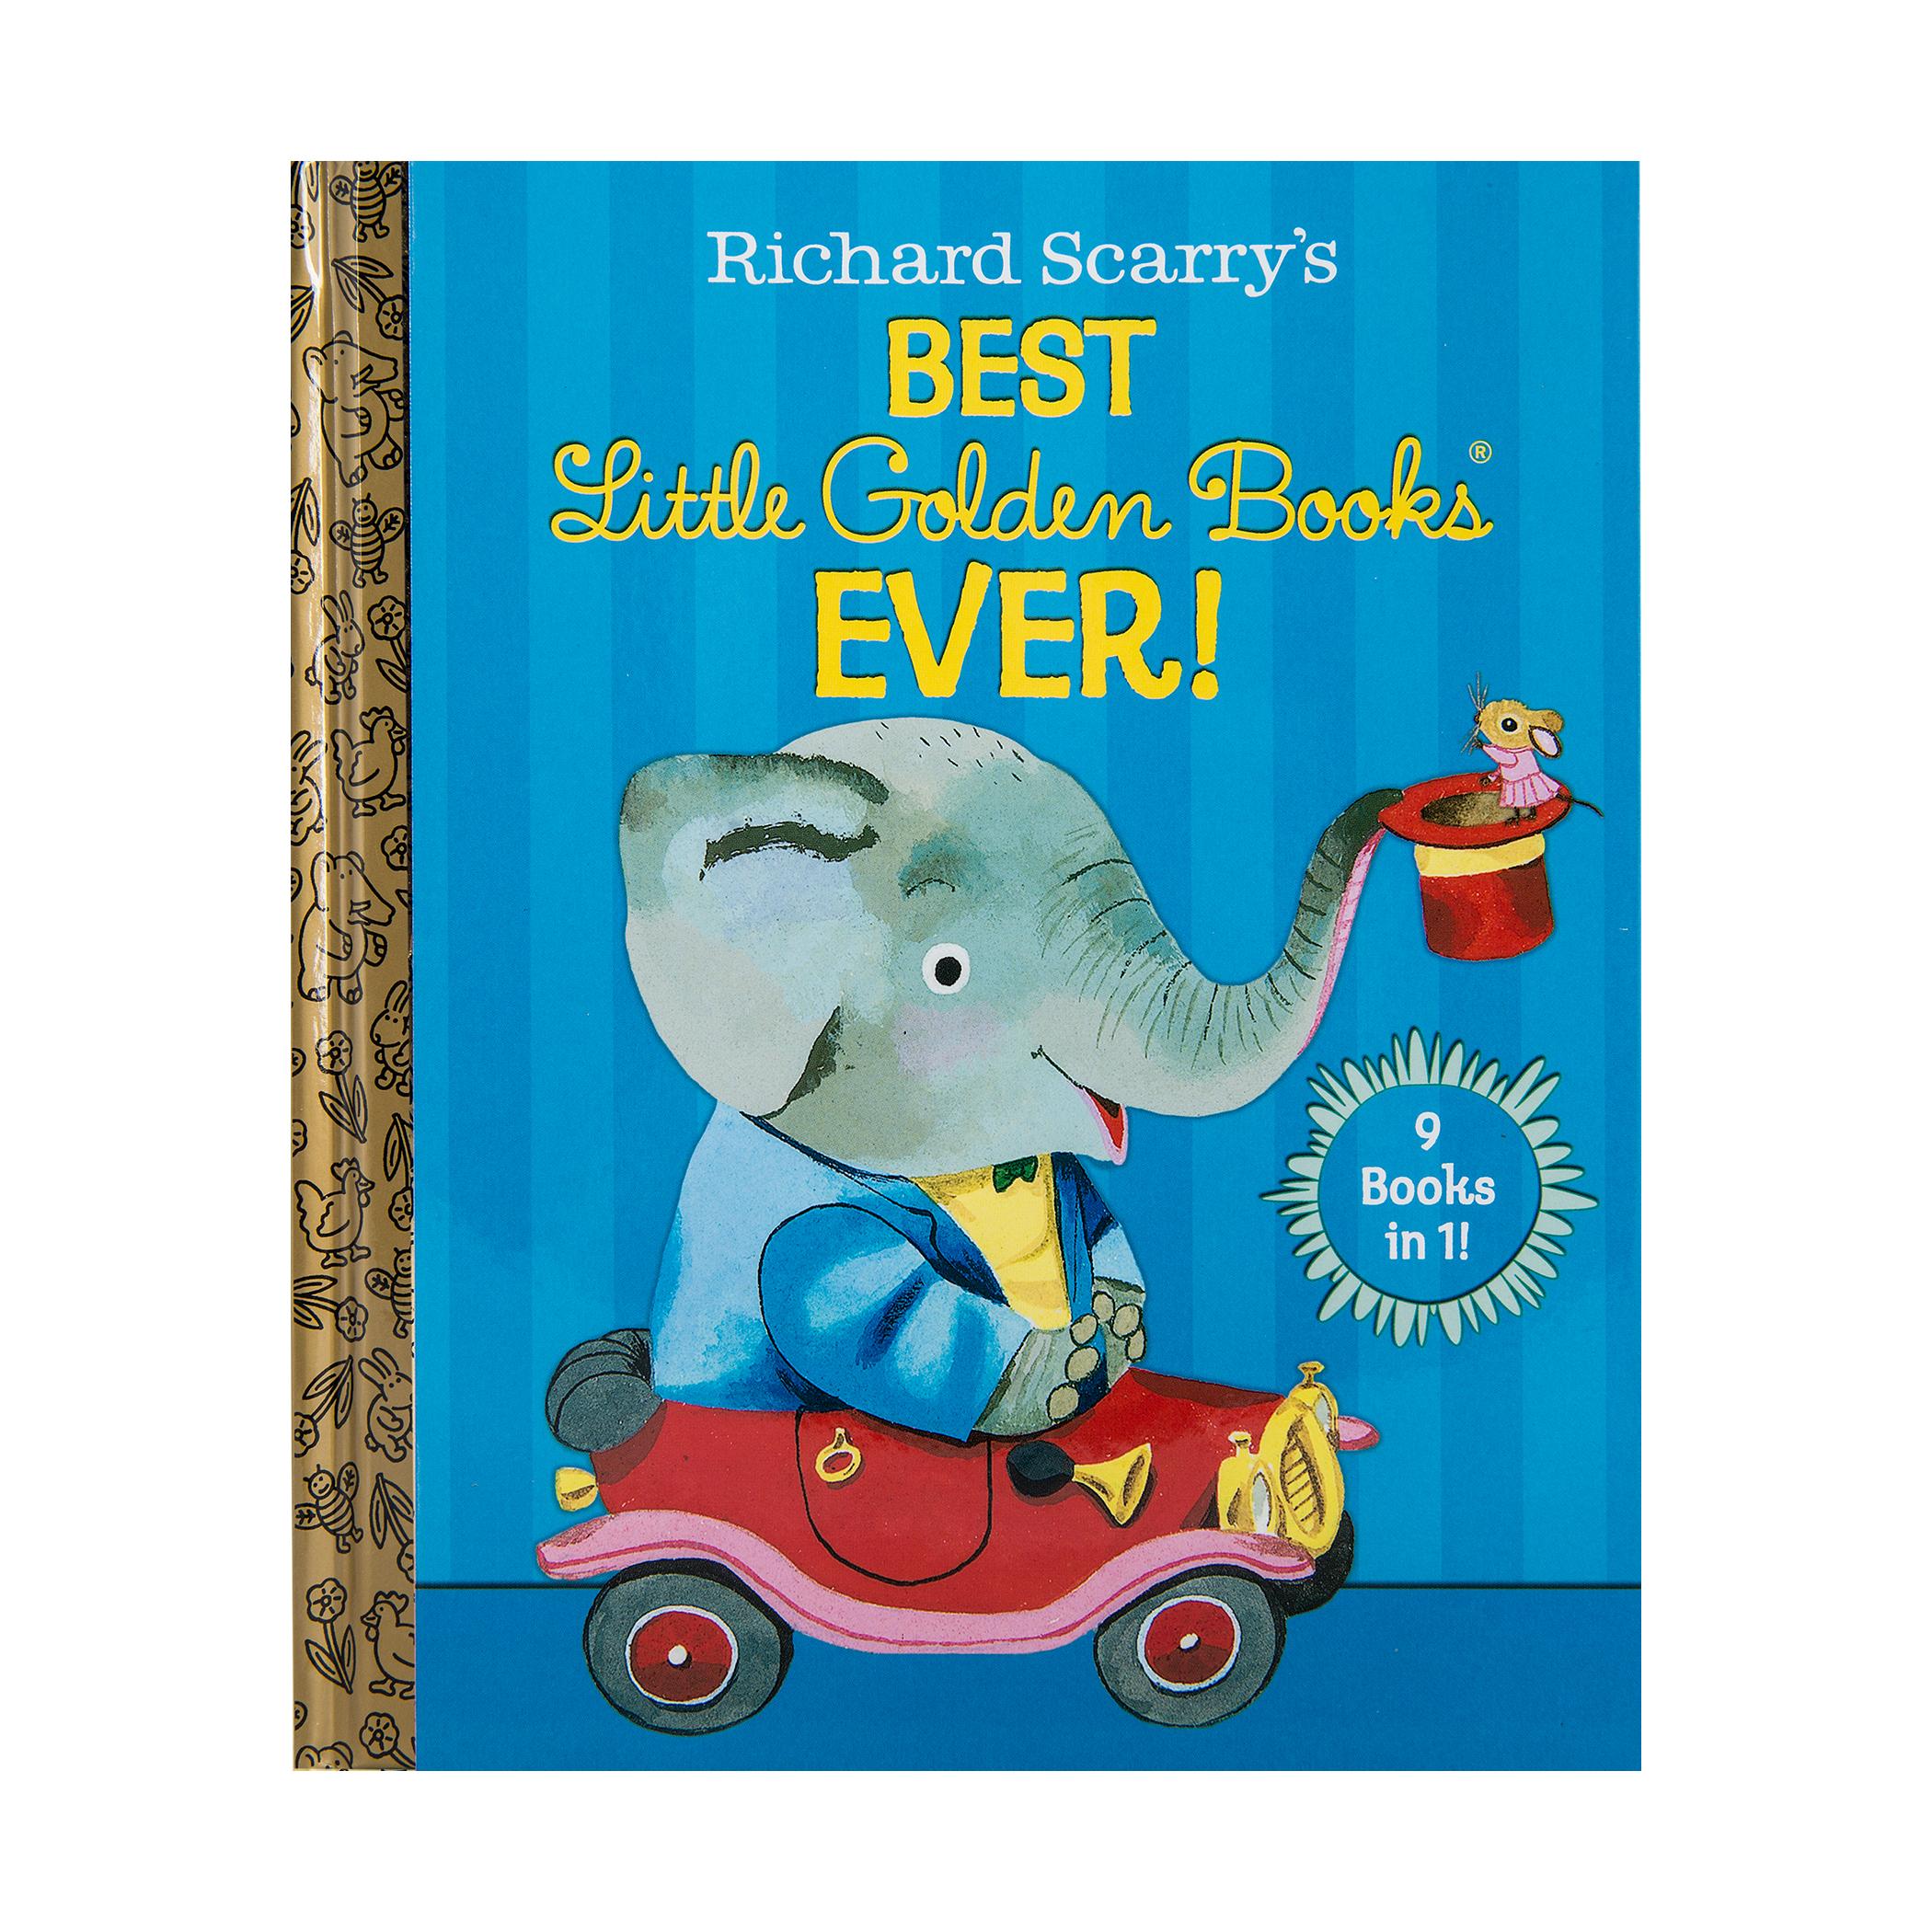  A Little Golden Book - Richard Scarry's Best Little Golden Books Ever!